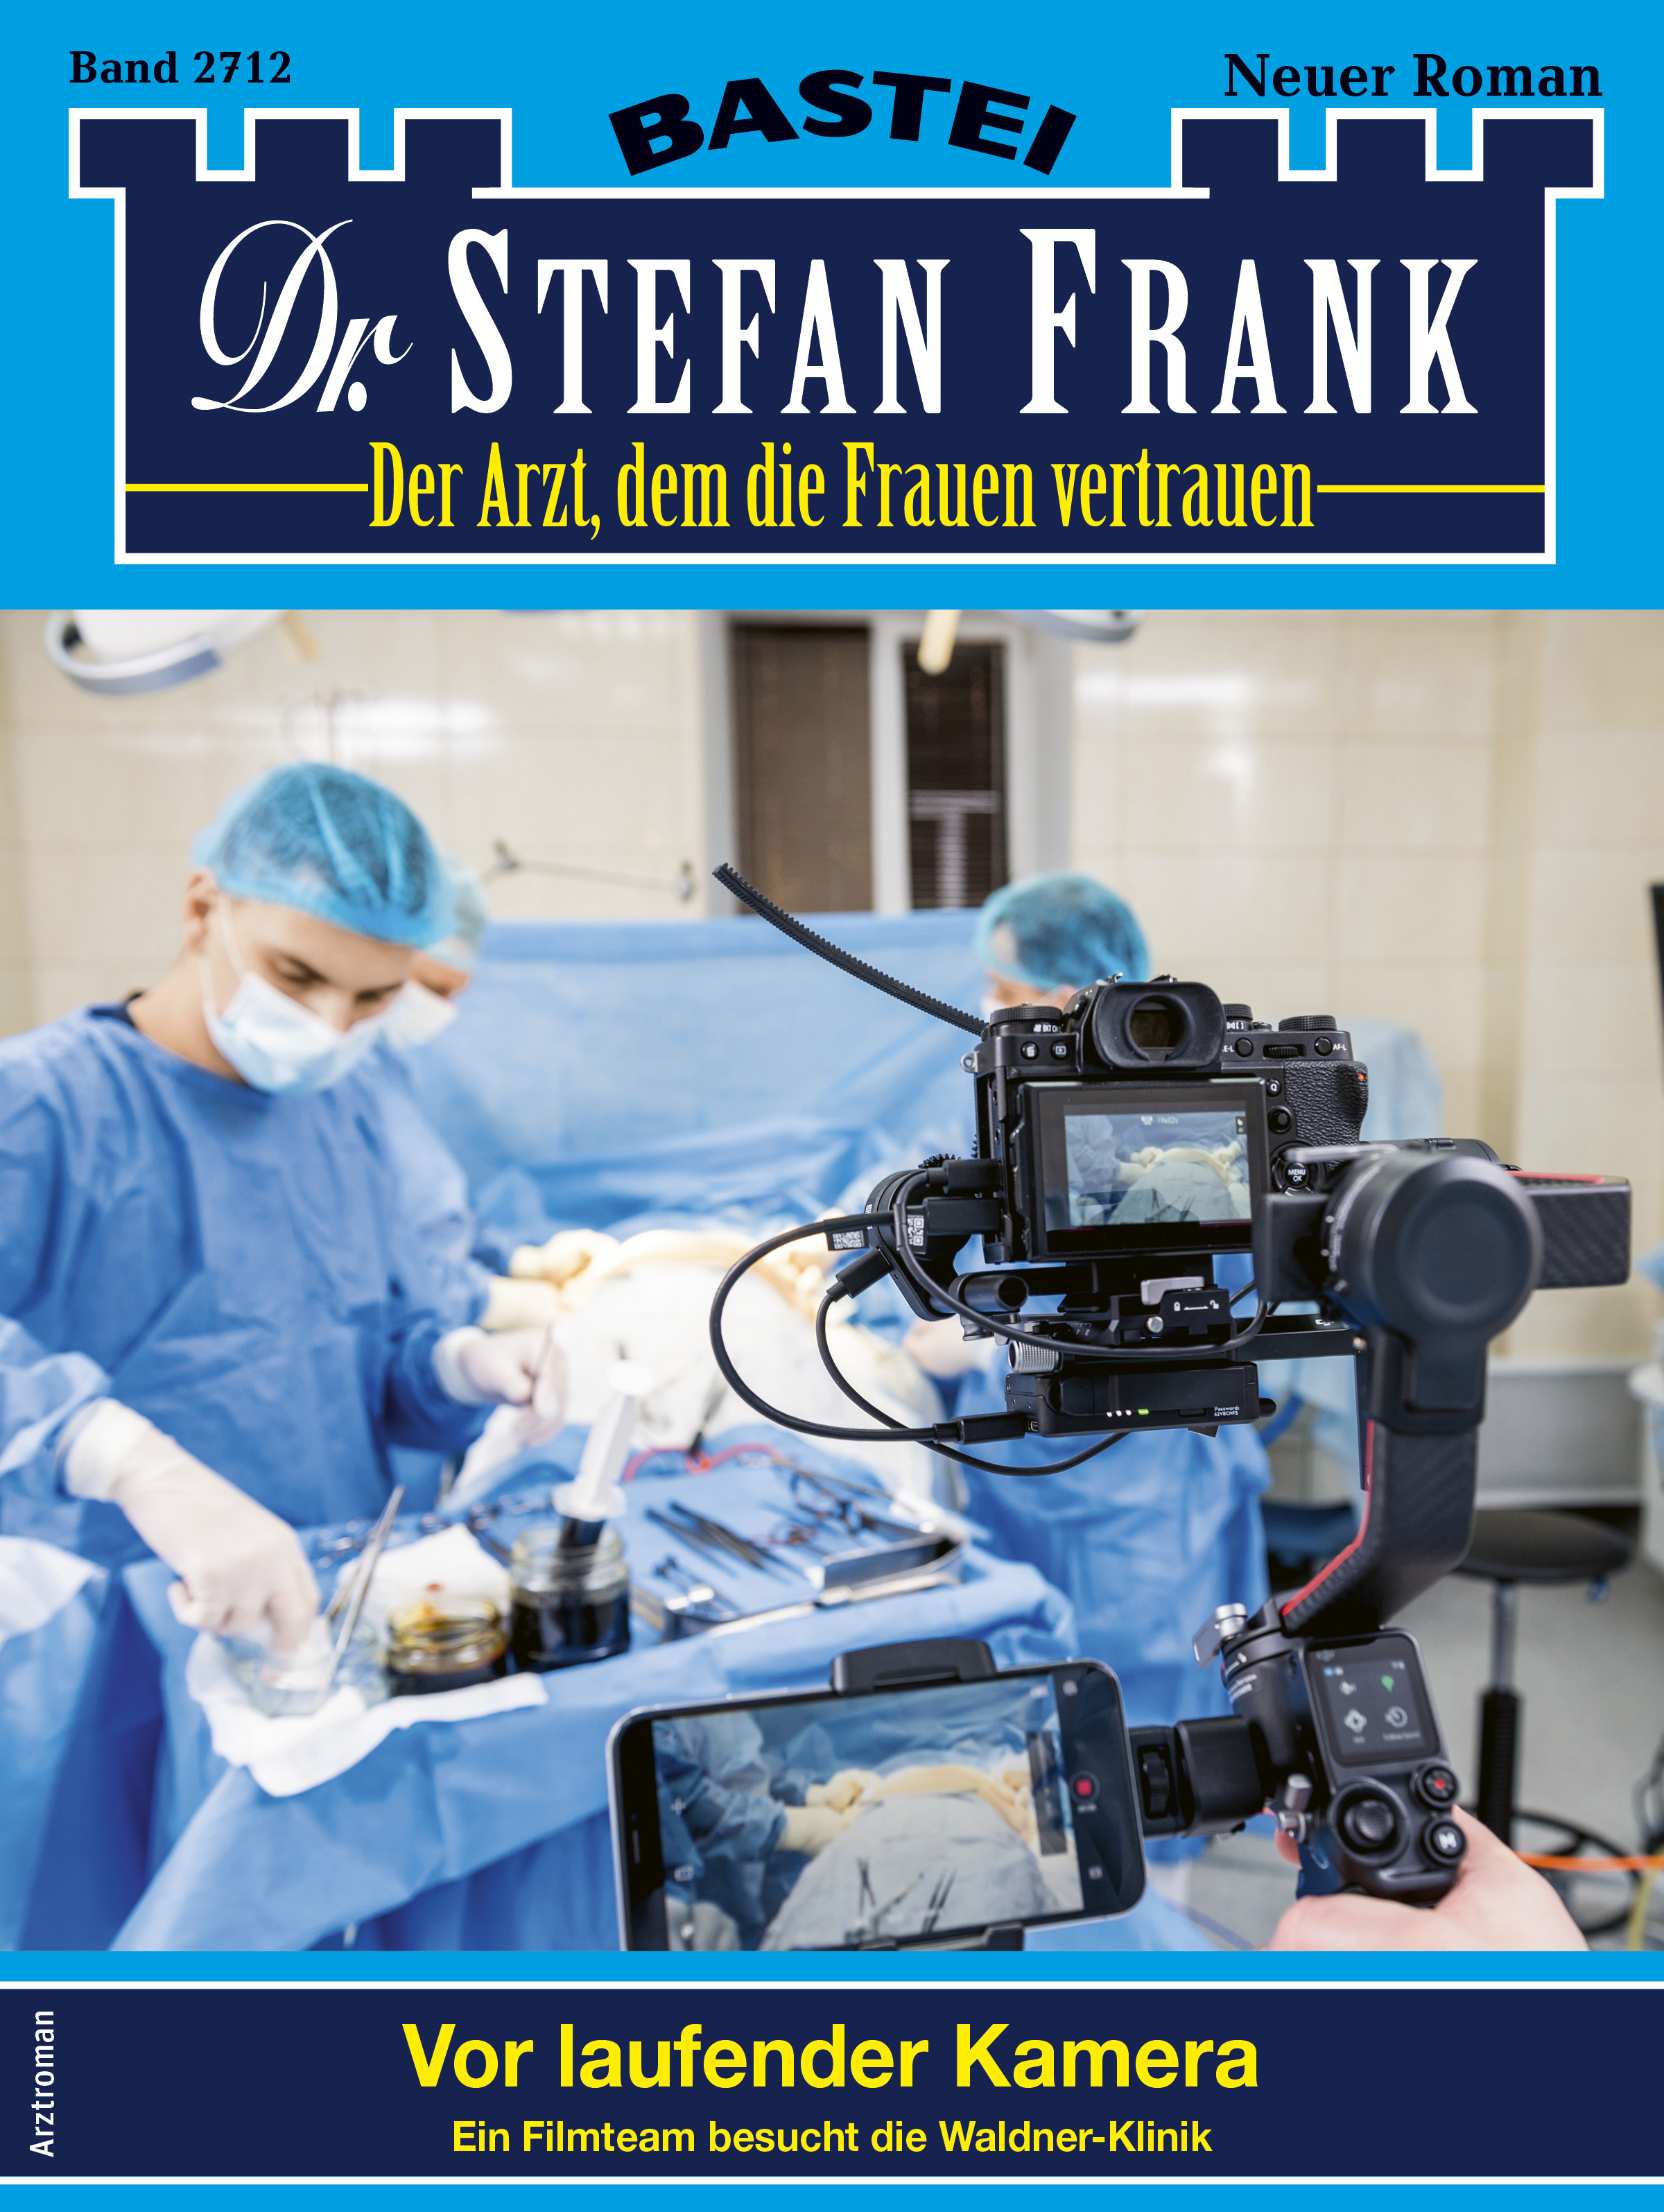 Dr. Stefan Frank 2712